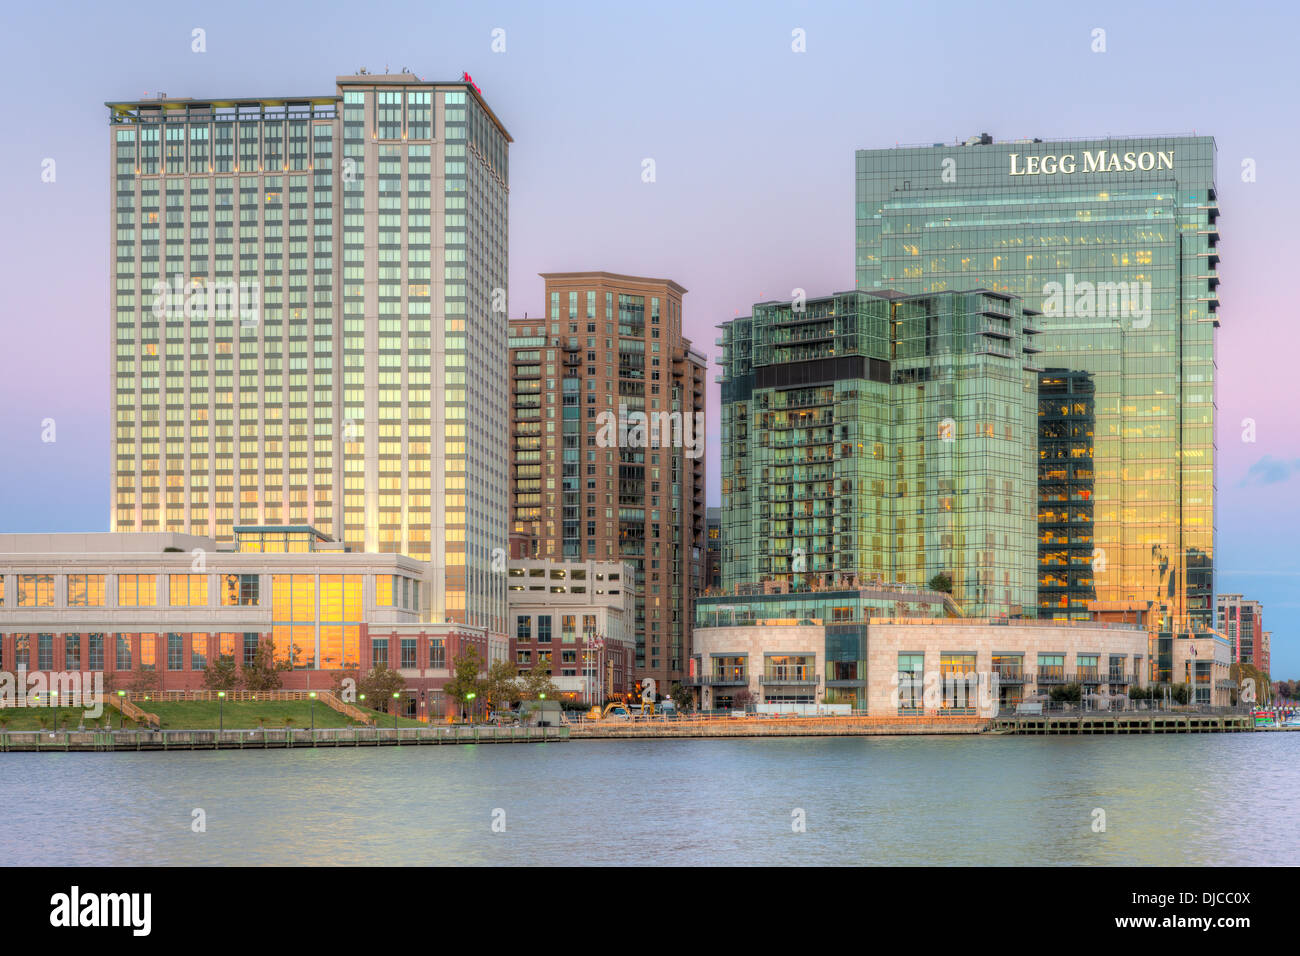 Le Port de Baltimore est le développement, y compris l'Hôtel Baltimore Marriott Waterfront et le Legg Mason Building au crépuscule Banque D'Images